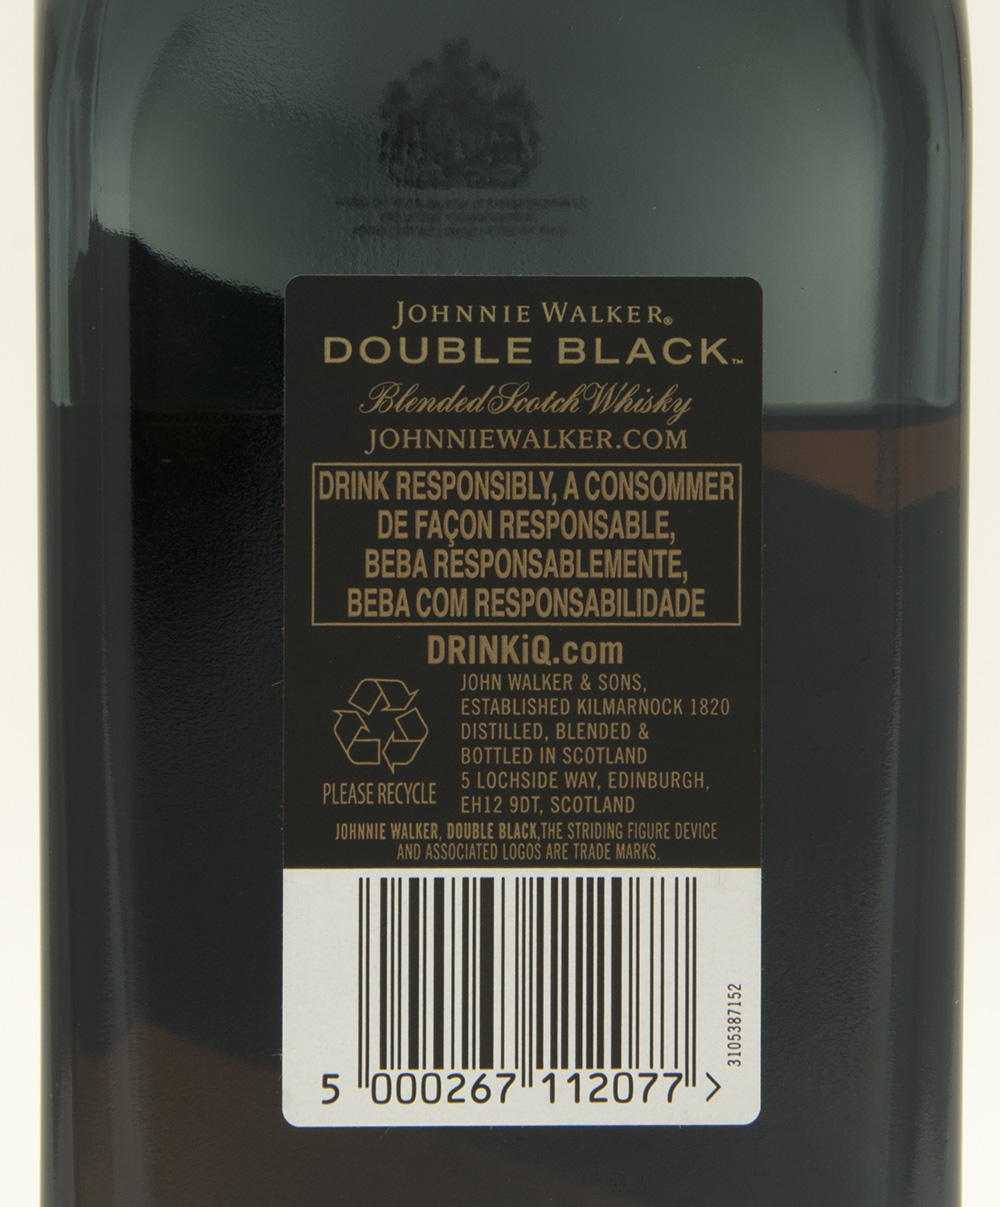 Billede: DSC_6983 - Johnny Walker - Double Black - bottle back.jpg